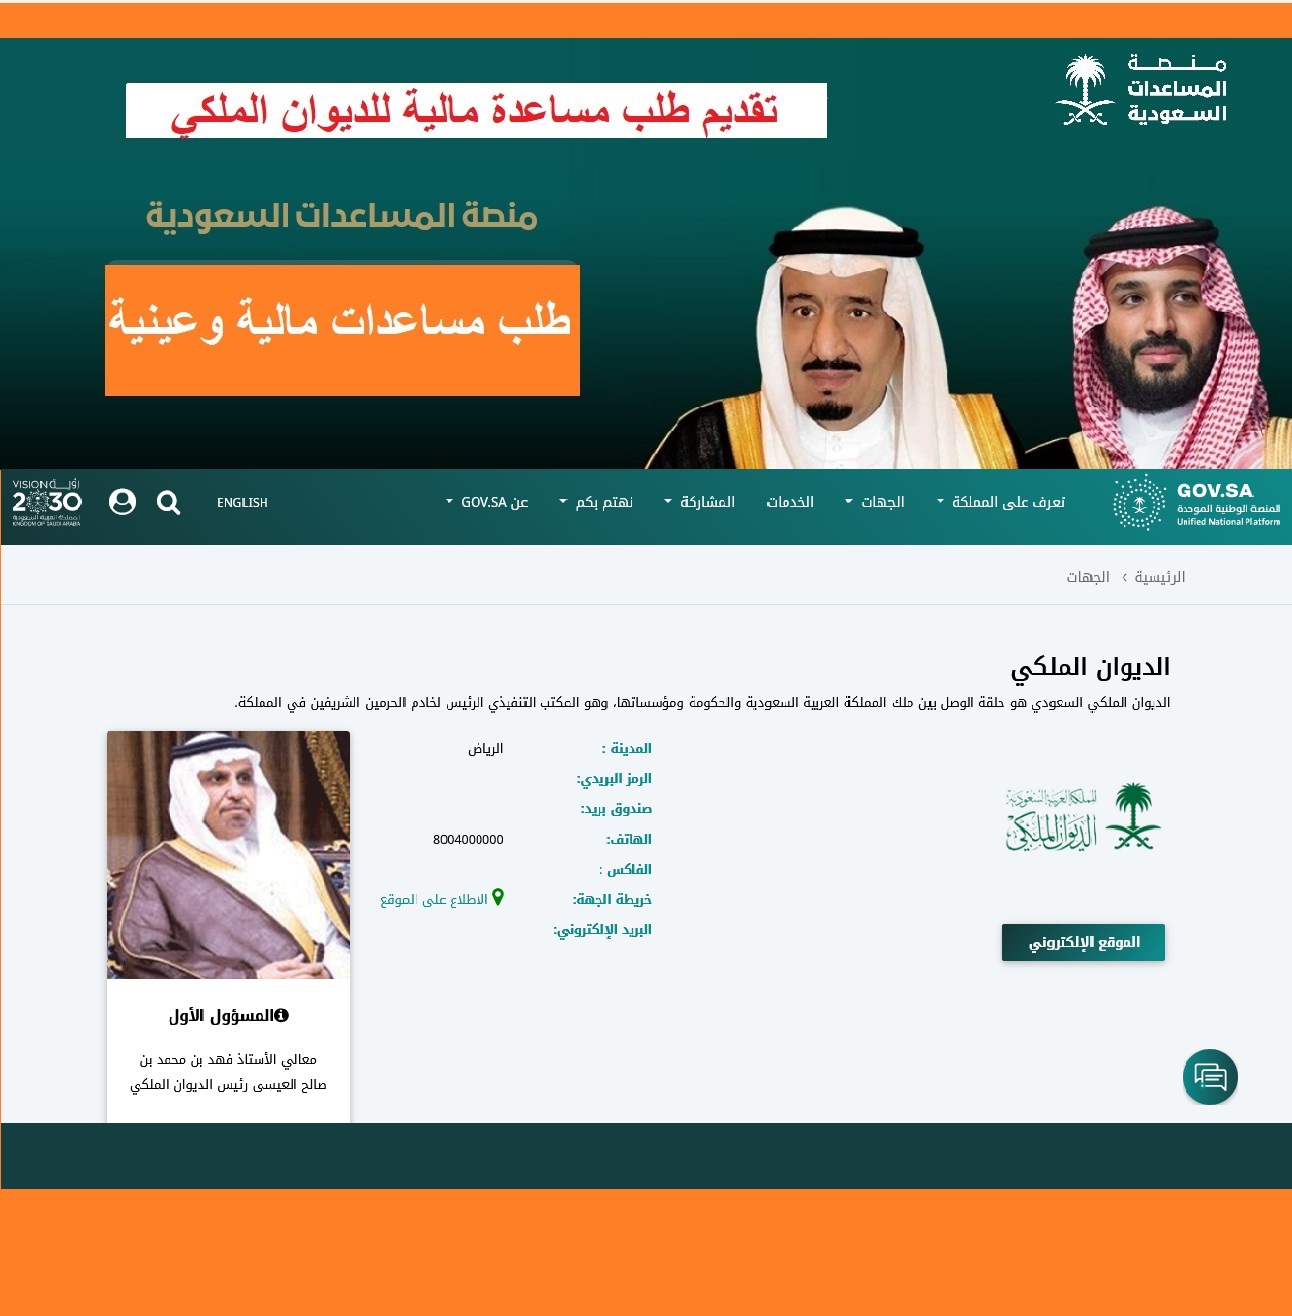 "قسم المساعدات الملكية" رقم الديوان السعودي لطلب إعانة محتاج "مالية - منح أرض مجانية"